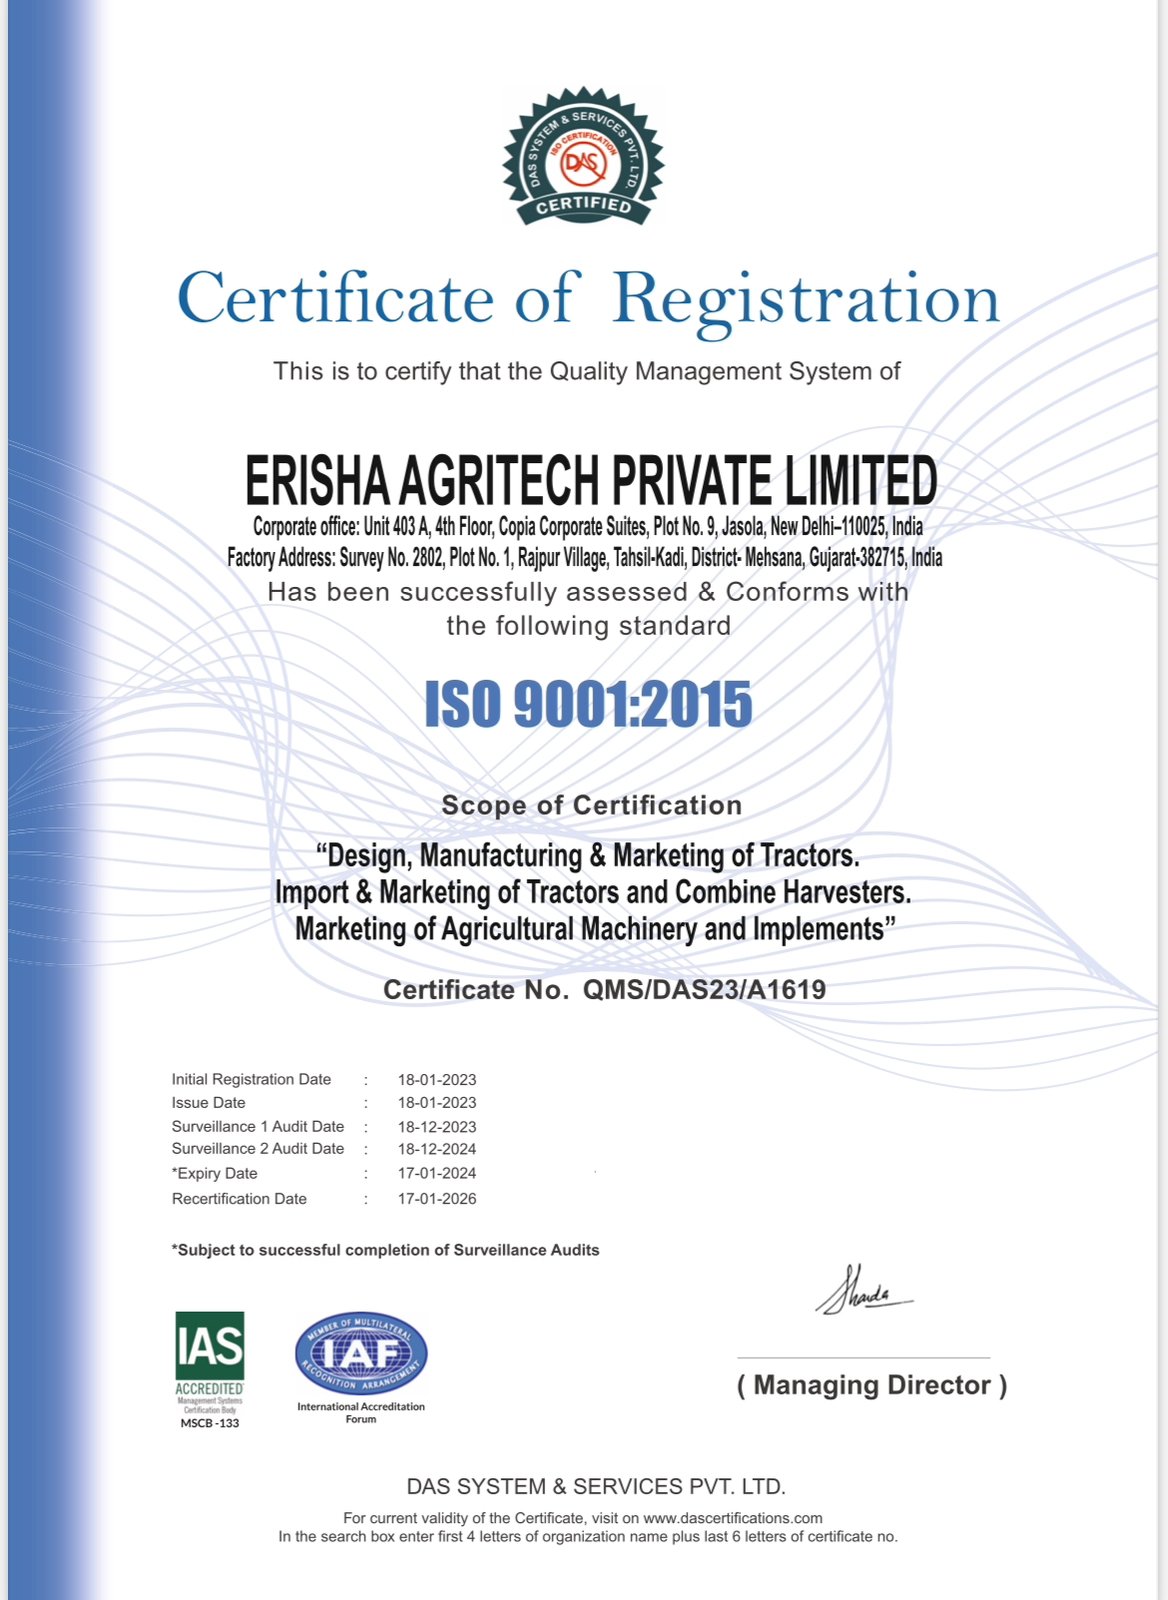 Erisha Agritech obtained ISO9001:2015